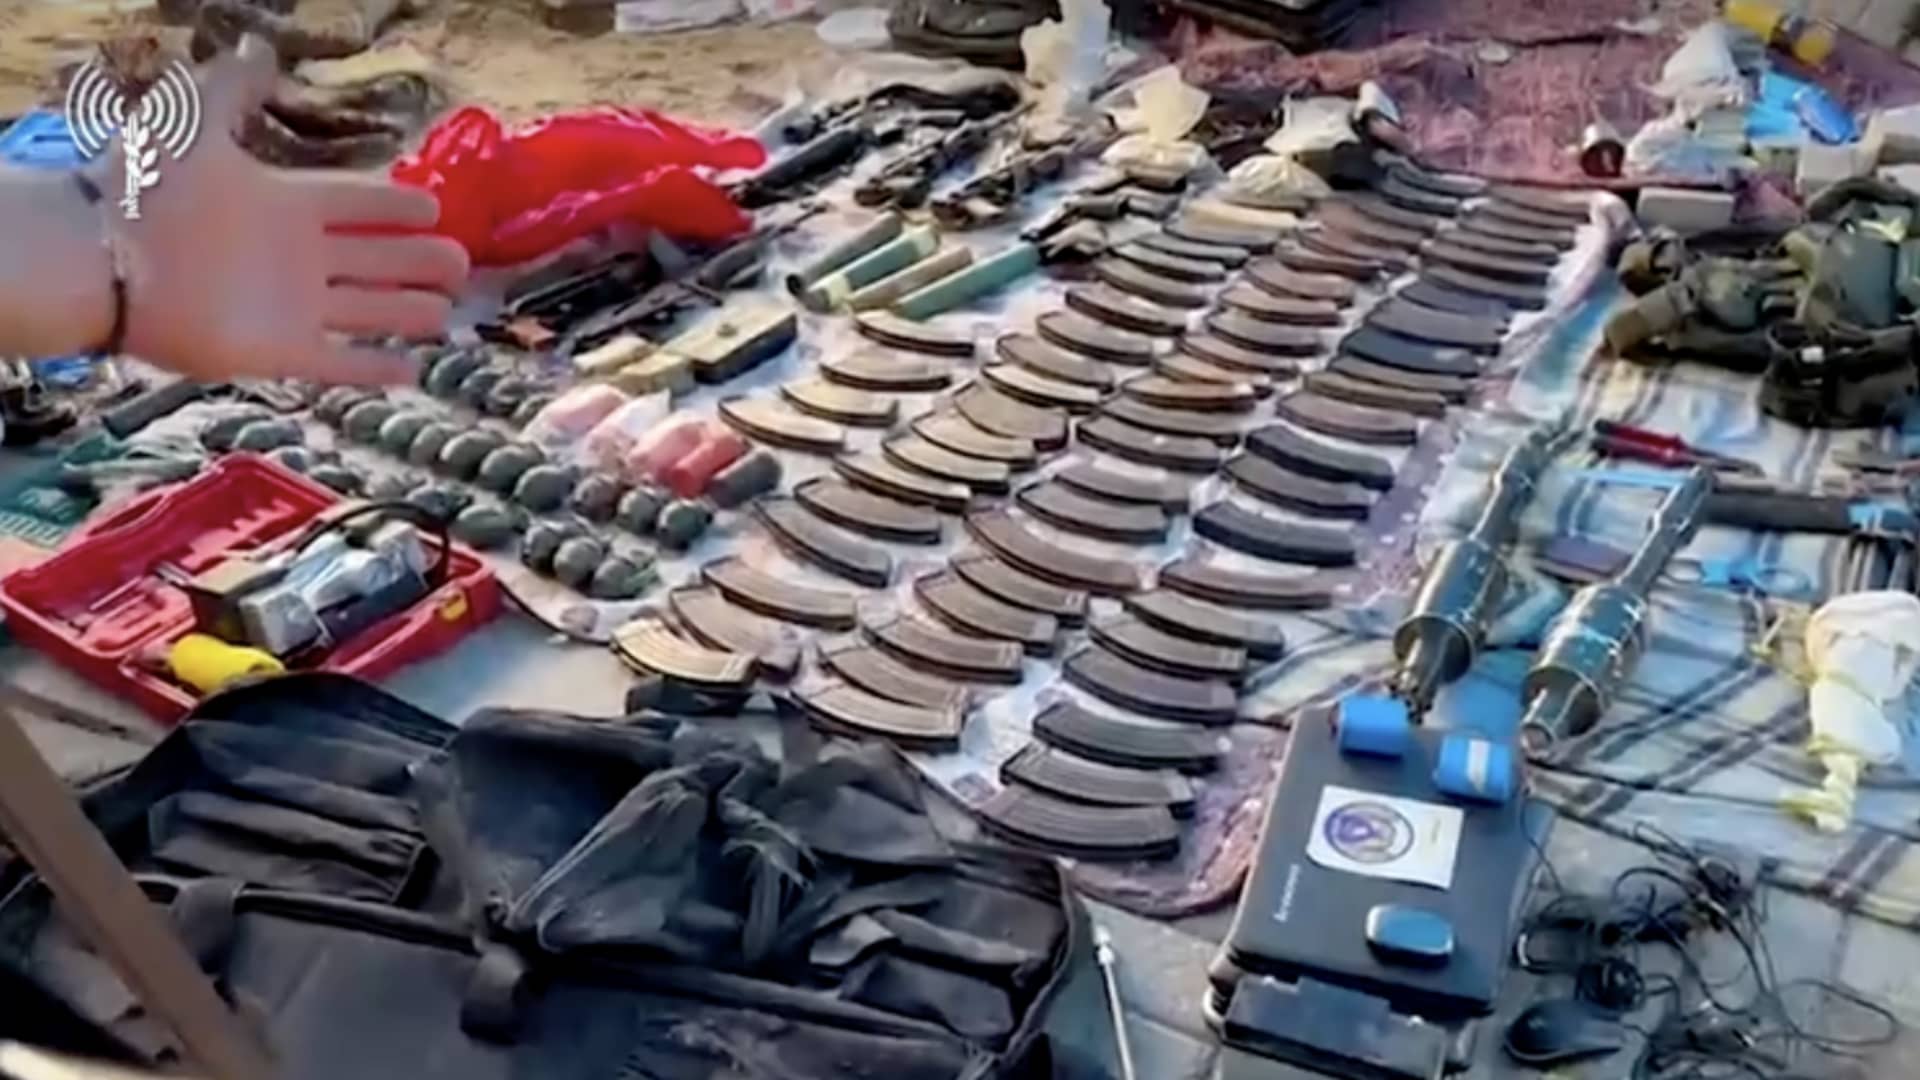 The IDF displays weapons found during a raid at Al-Sharif Hospital in Gaza on Nov. 16th, 2023.